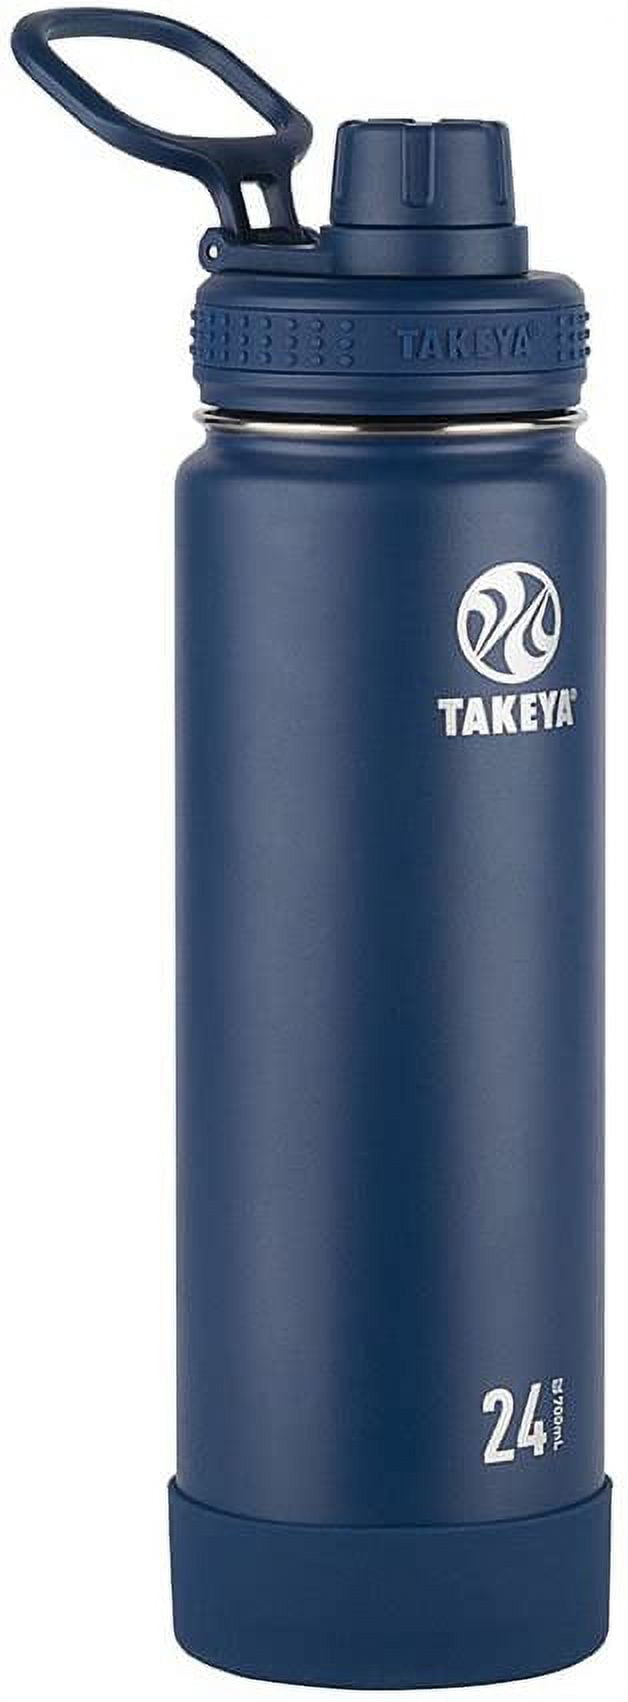 Takeya 24 oz Actives Water Bottle w/ Spout Lid